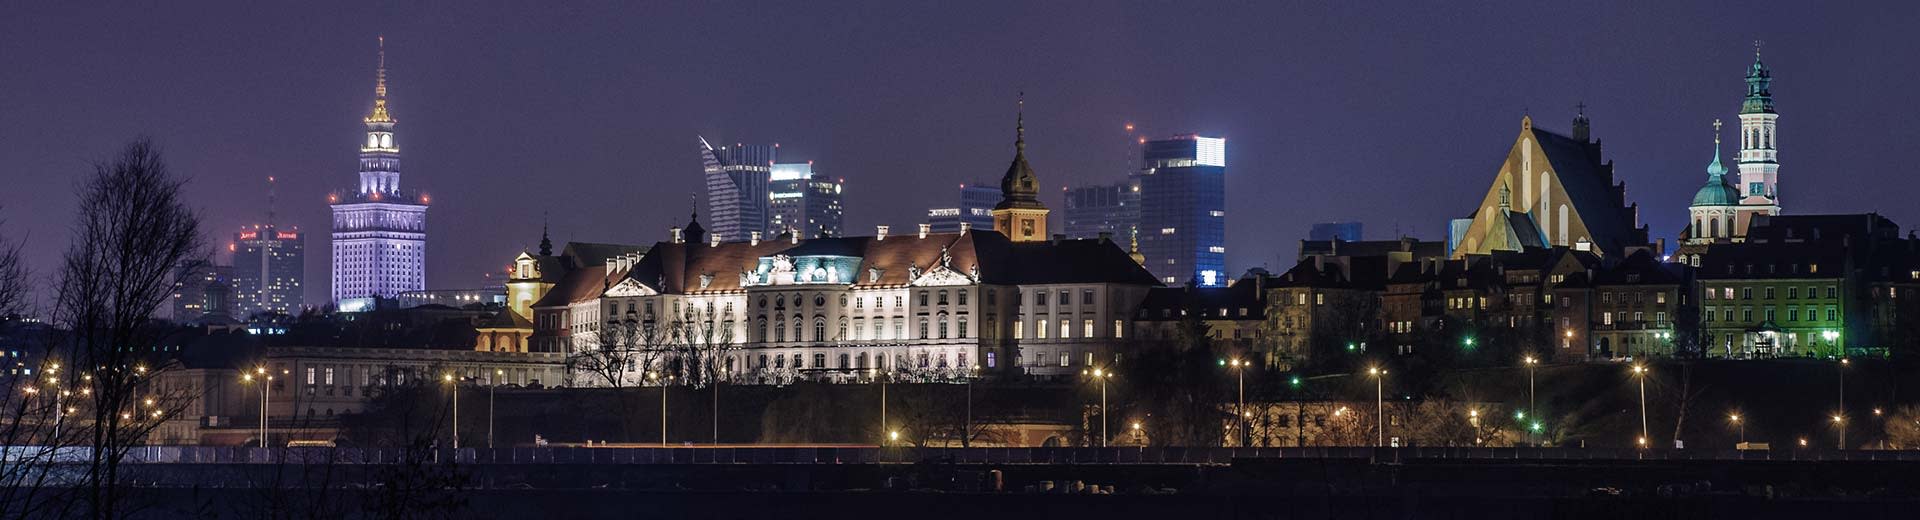 El famoso Palacio de Cultura y Ciencia de Varsovia domina los antecedentes, mientras que en frente son los apartamentos polacos de baja altura.